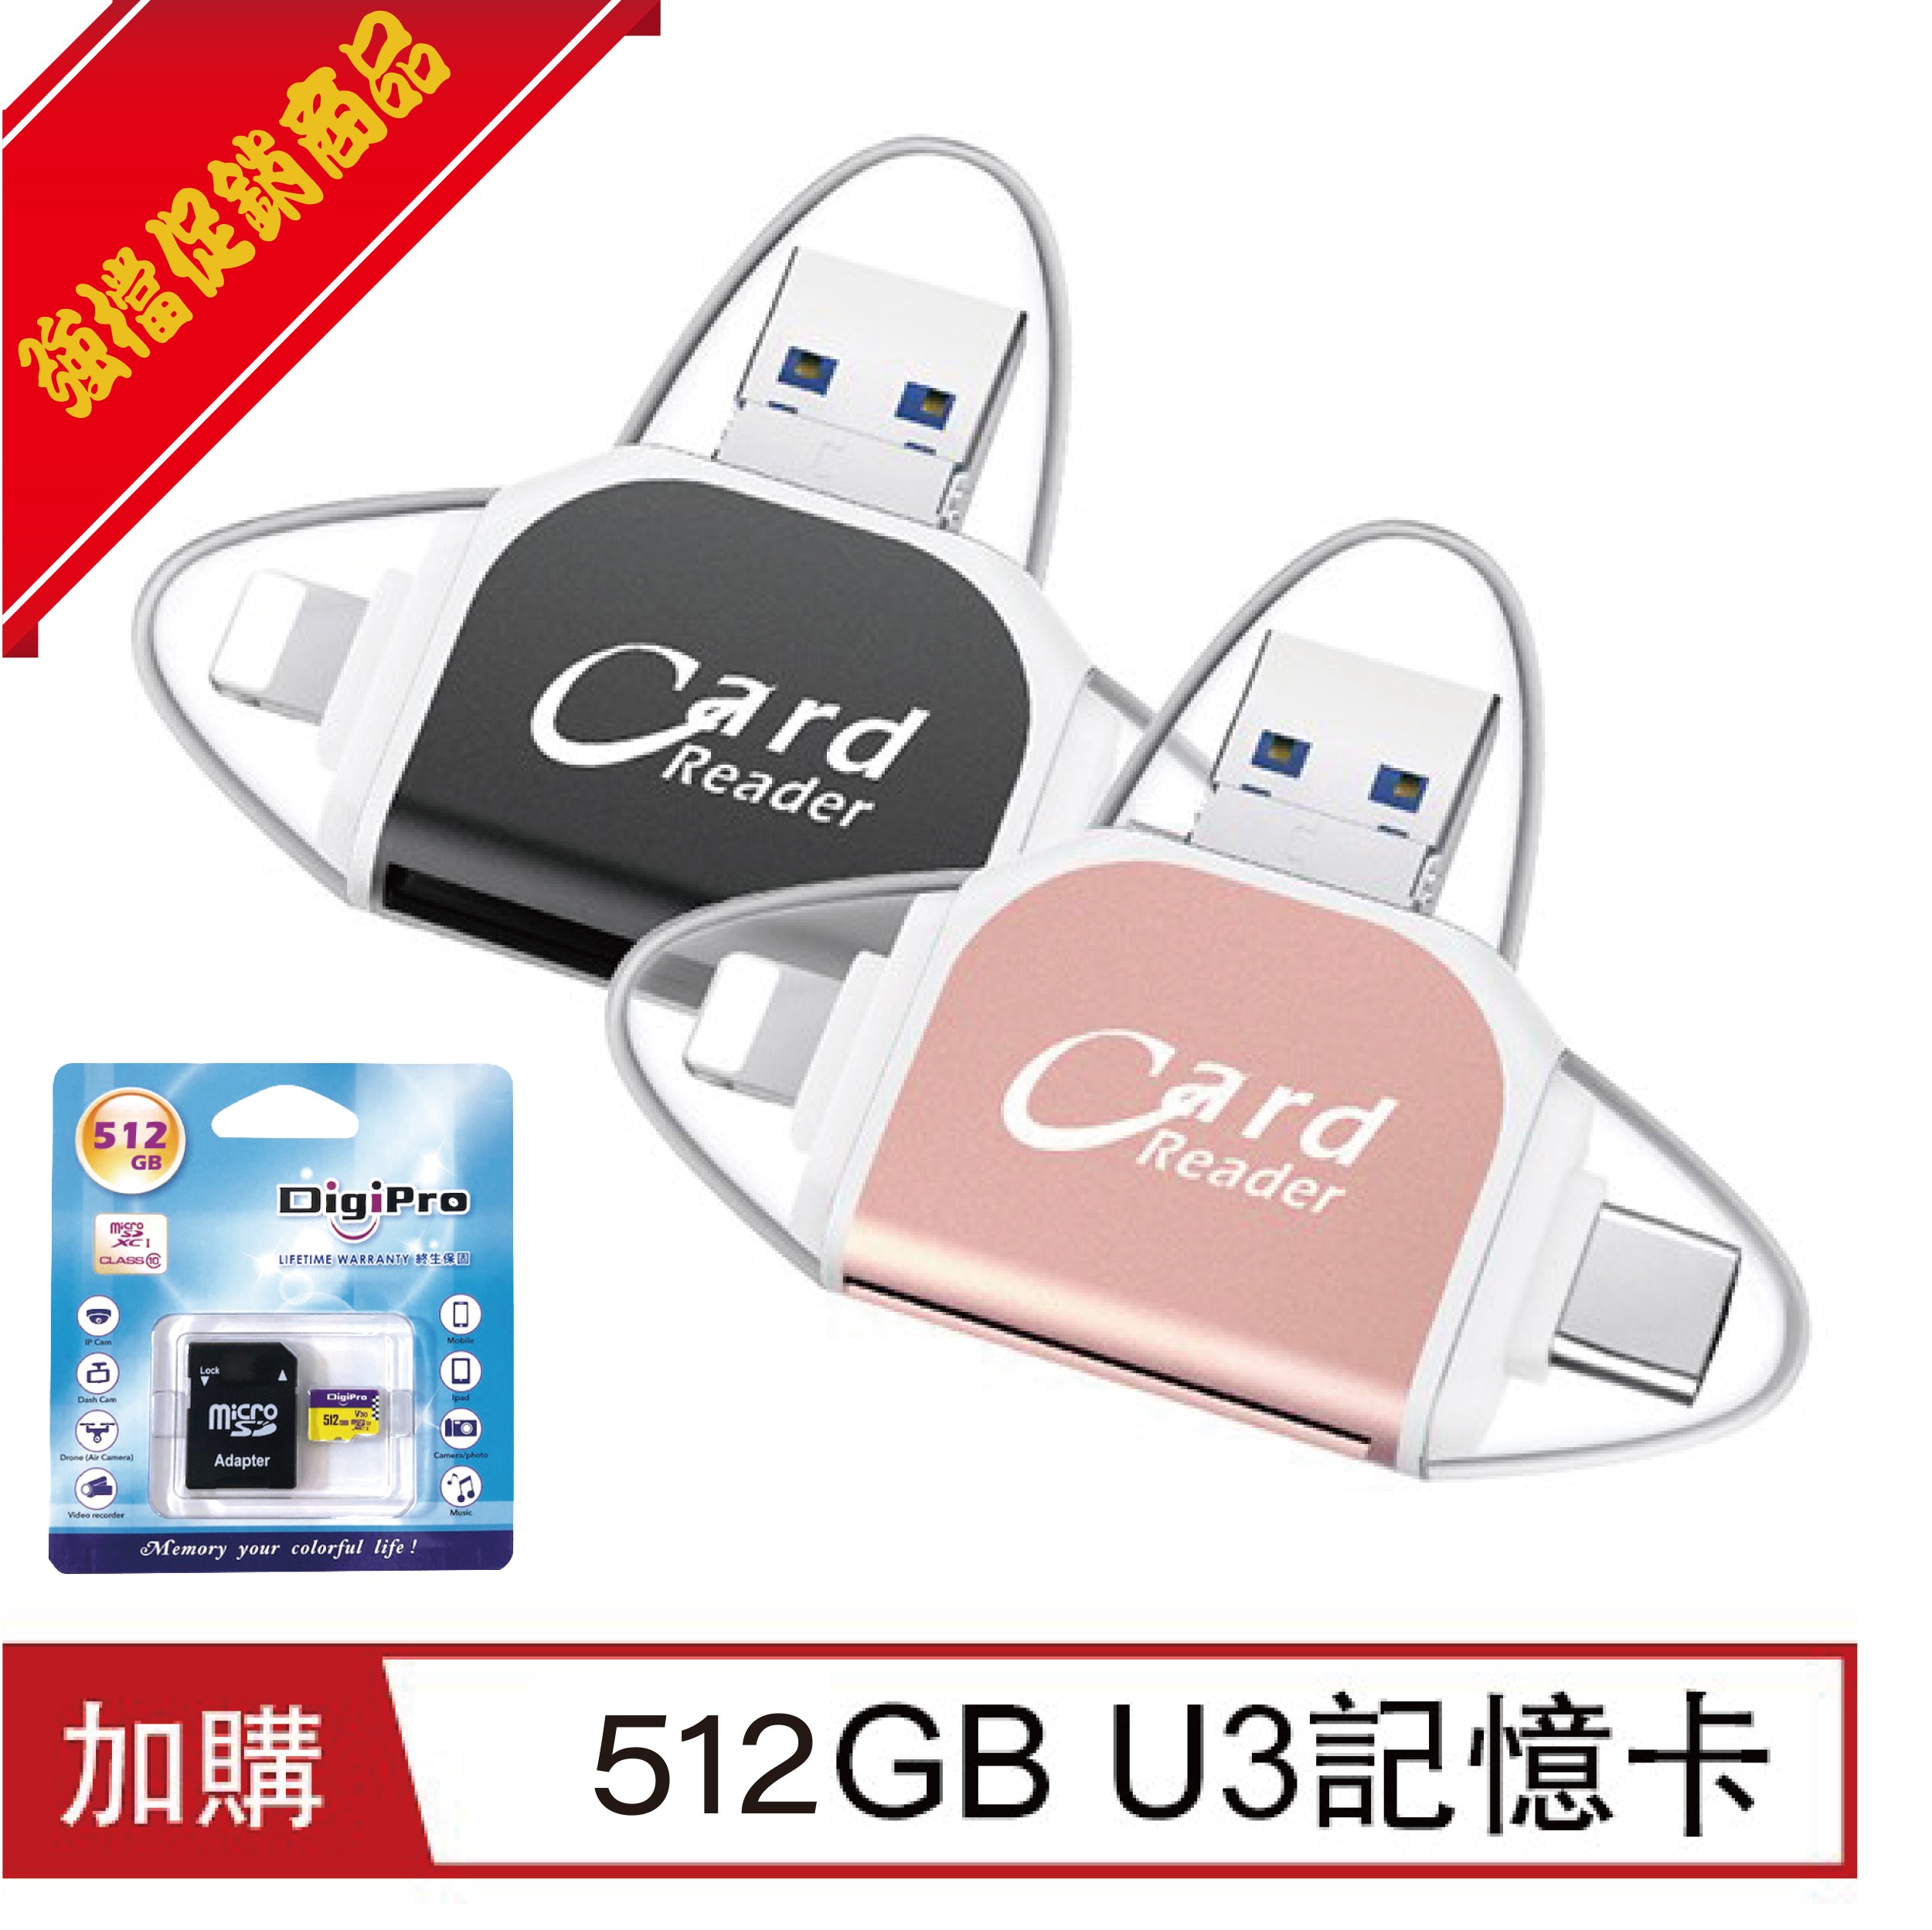 四合一多功能OTG/USB讀卡器 (加購512GB記憶卡)